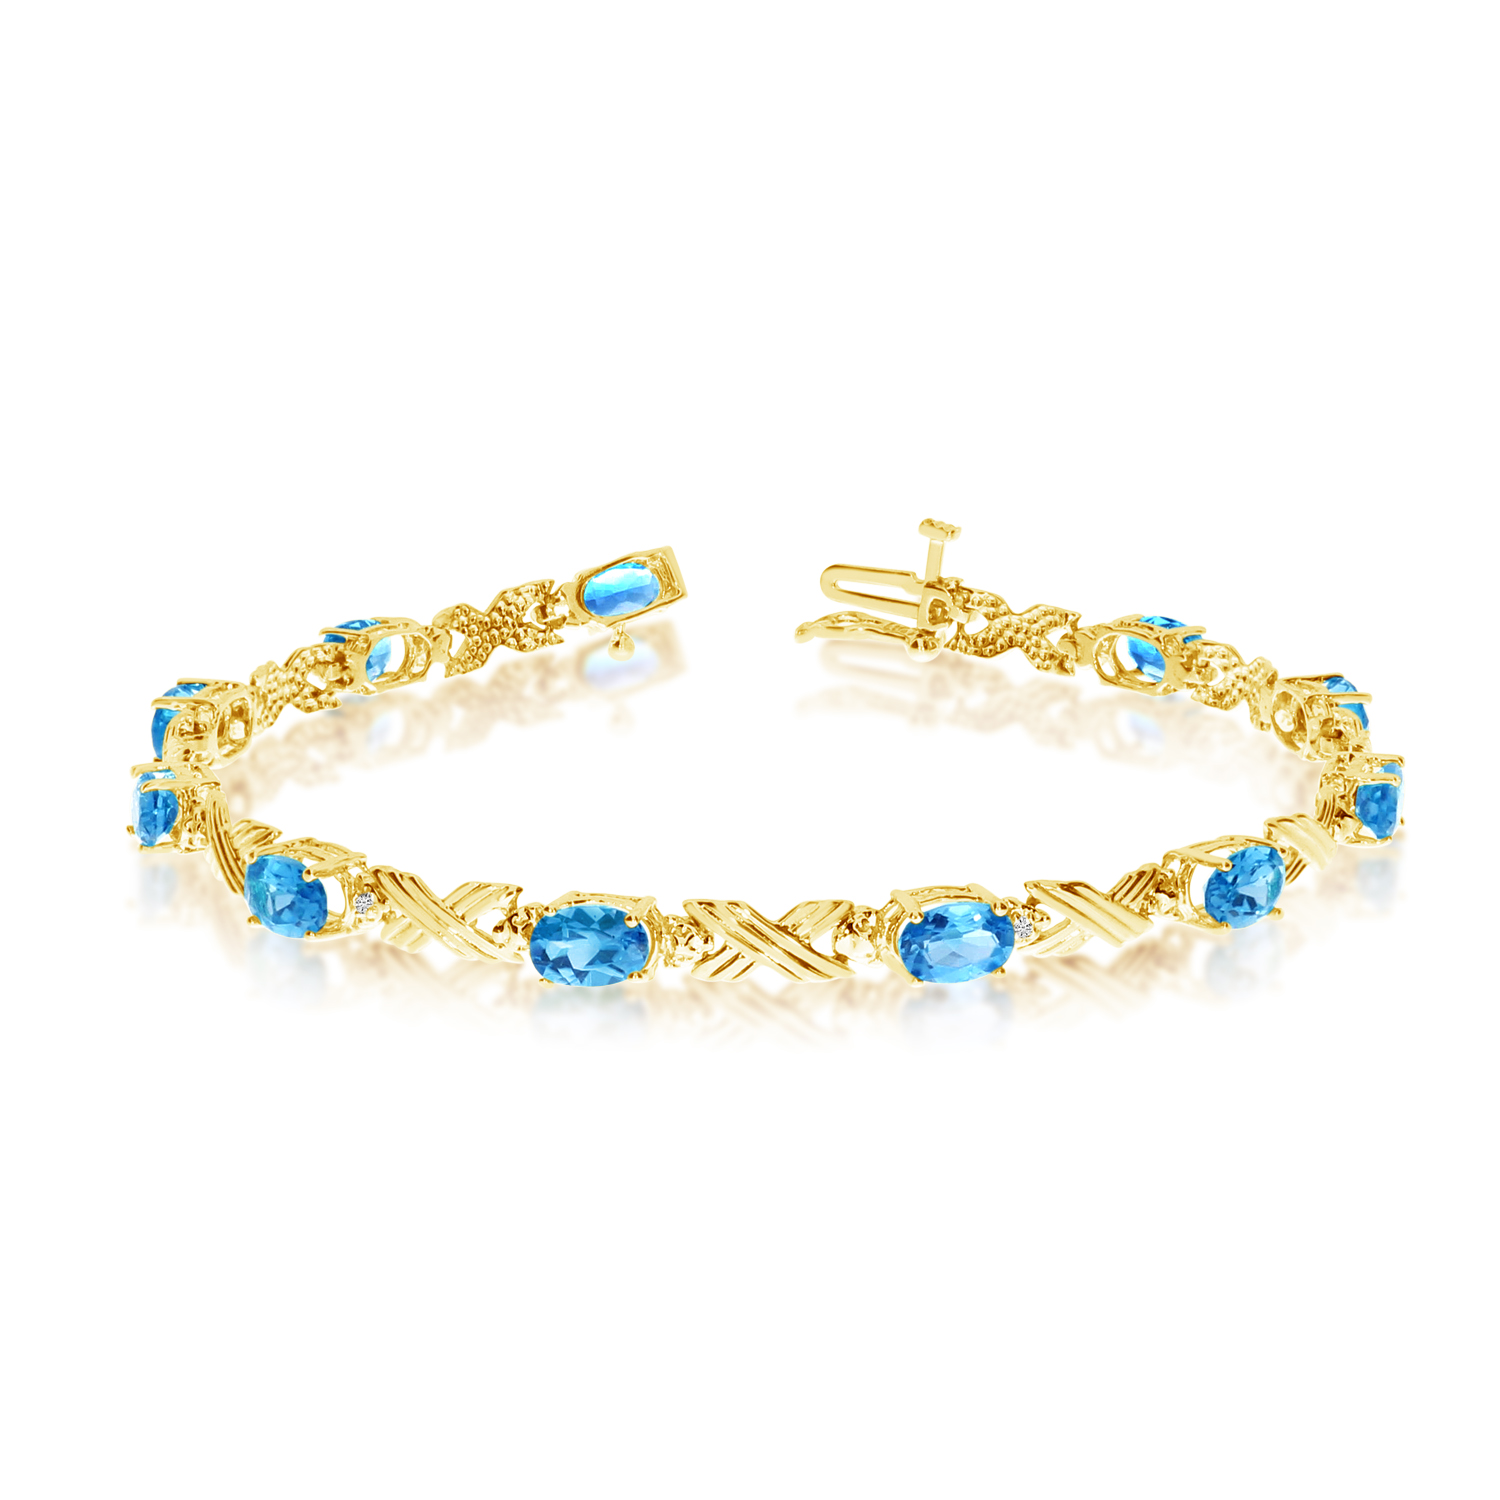 10K Yellow Gold Oval Blue Topaz and Diamond Bracelet